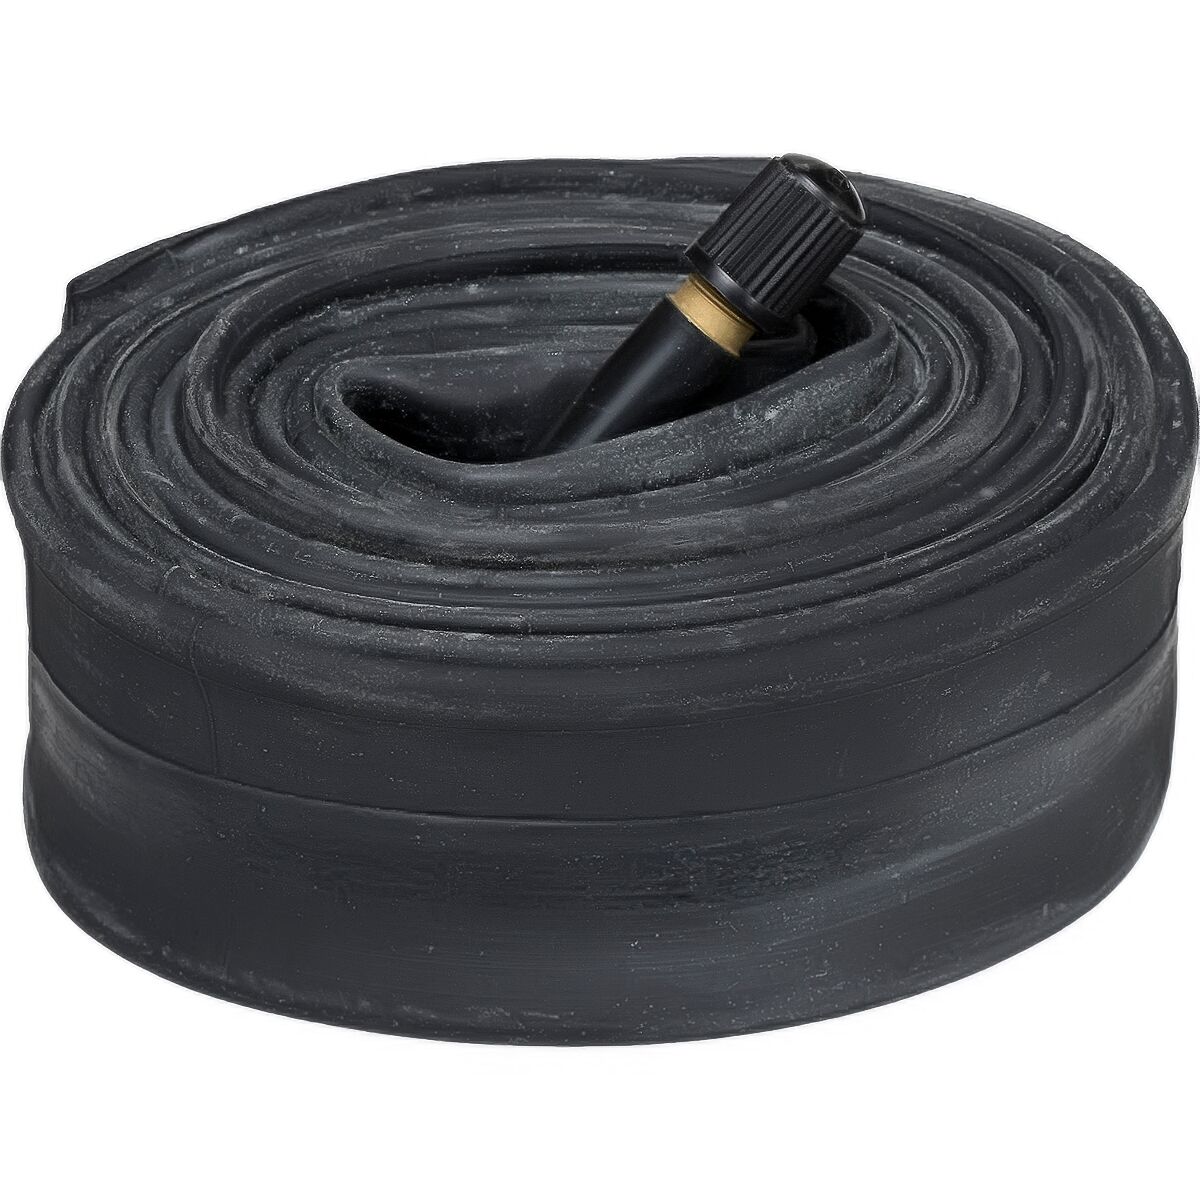 Michelin AirStop Schrader Valve Road Tube Black, 700x35-47mm, 34mm Schrader Valve